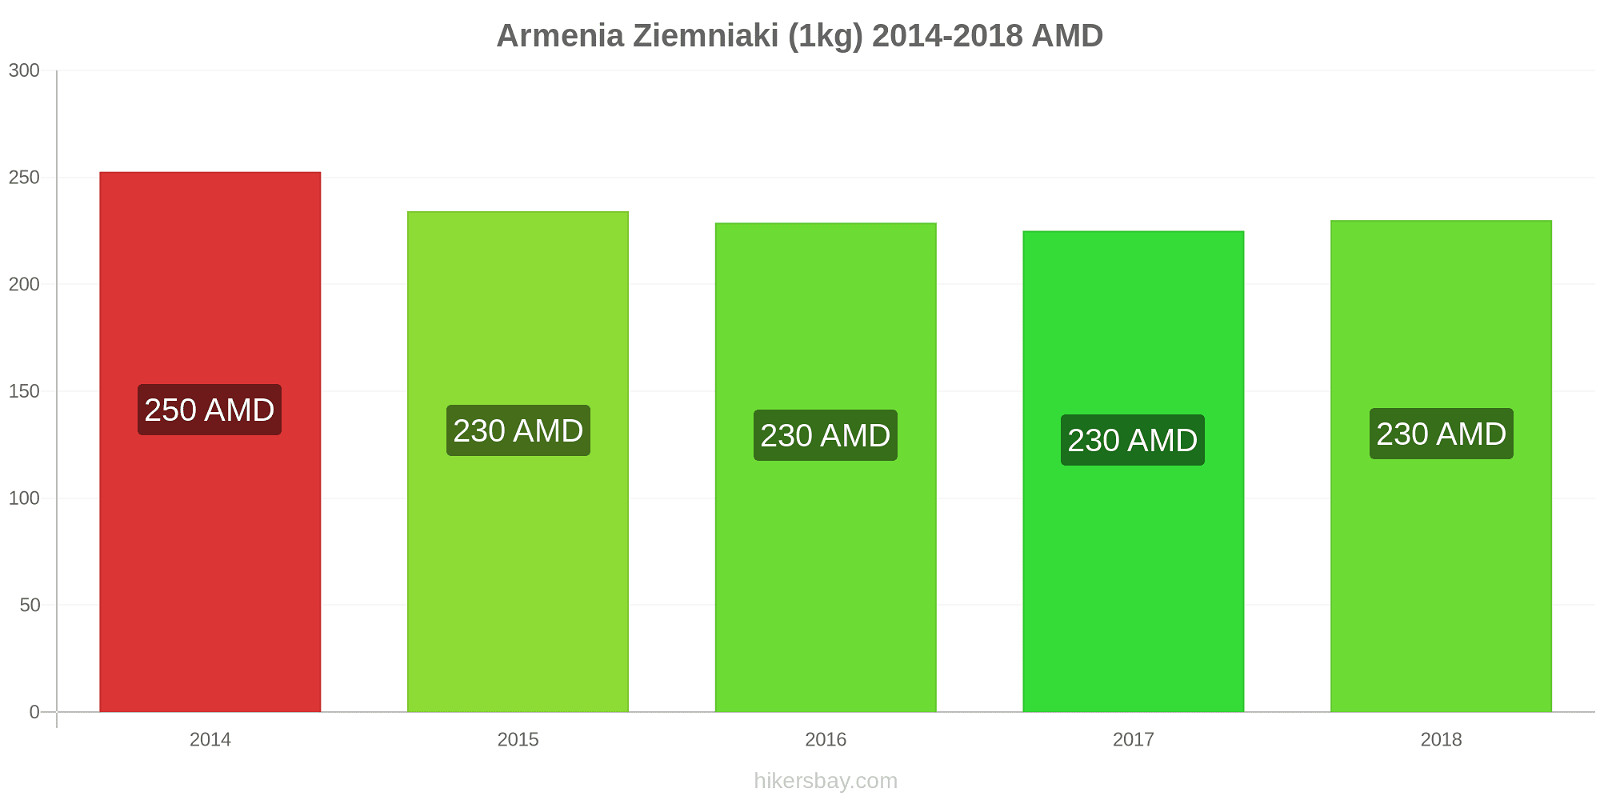 Armenia zmiany cen Ziemniaki (1kg) hikersbay.com